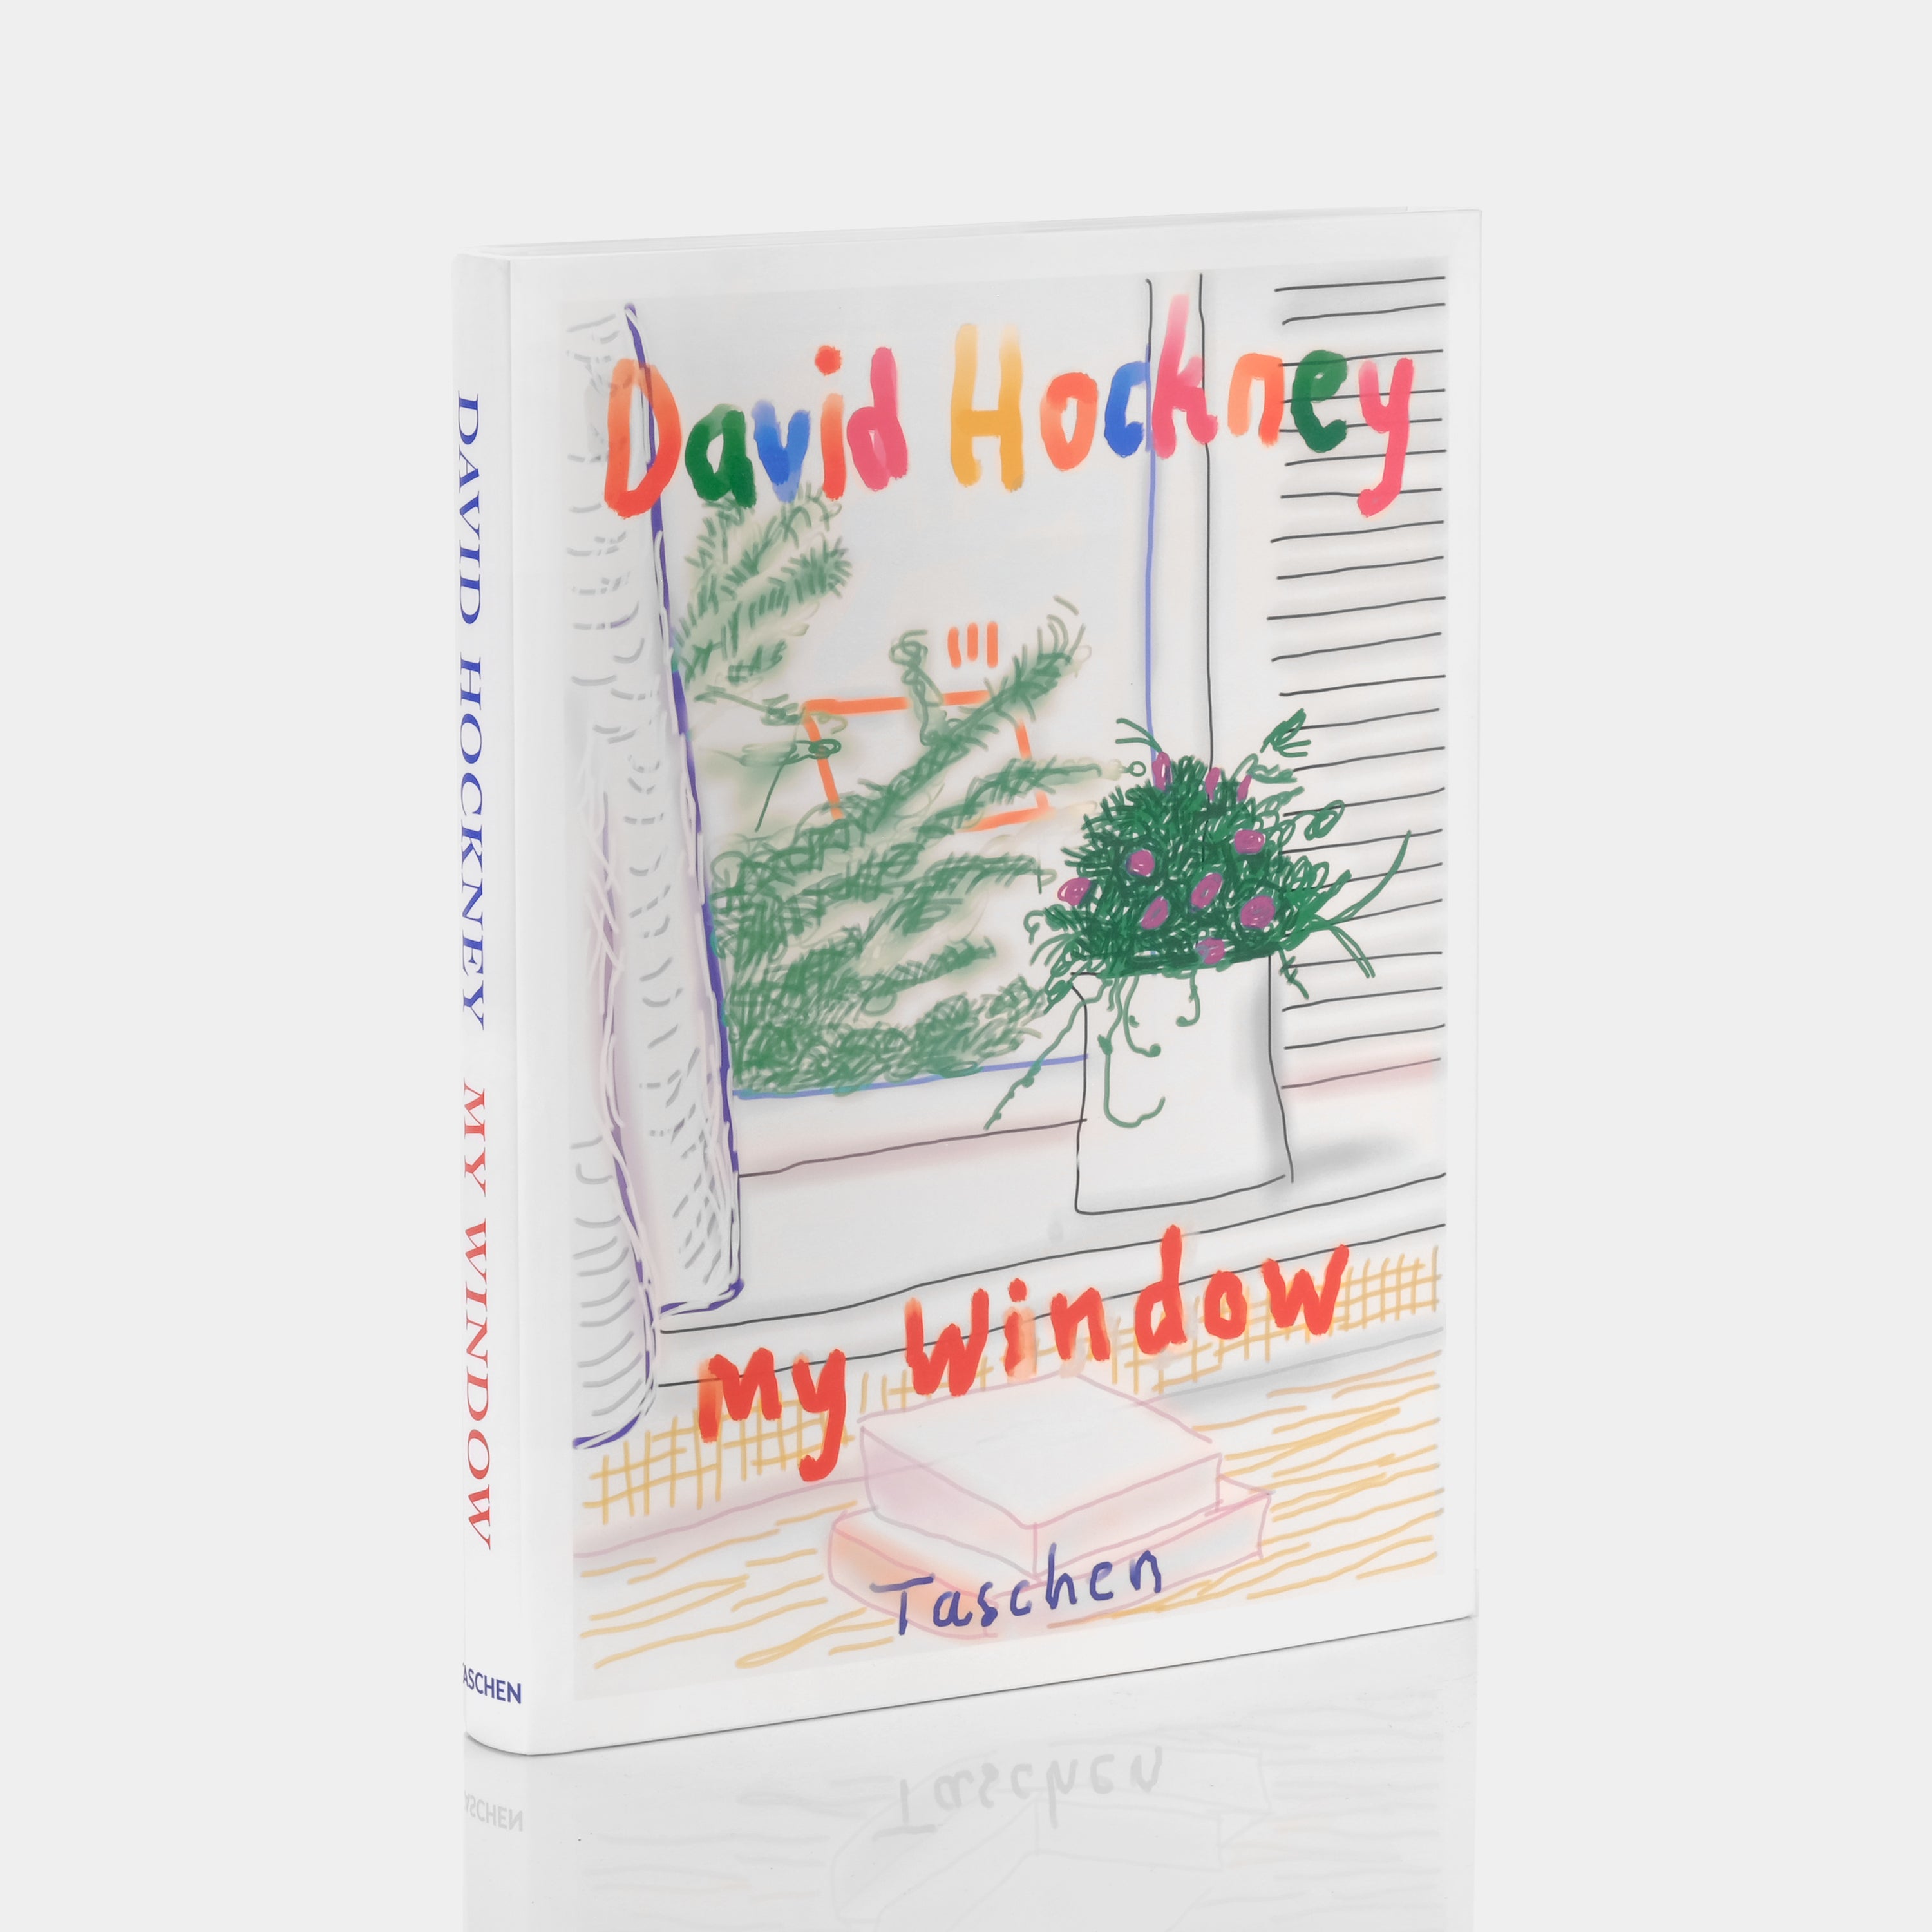 David Hockney. My Window XL Taschen Book